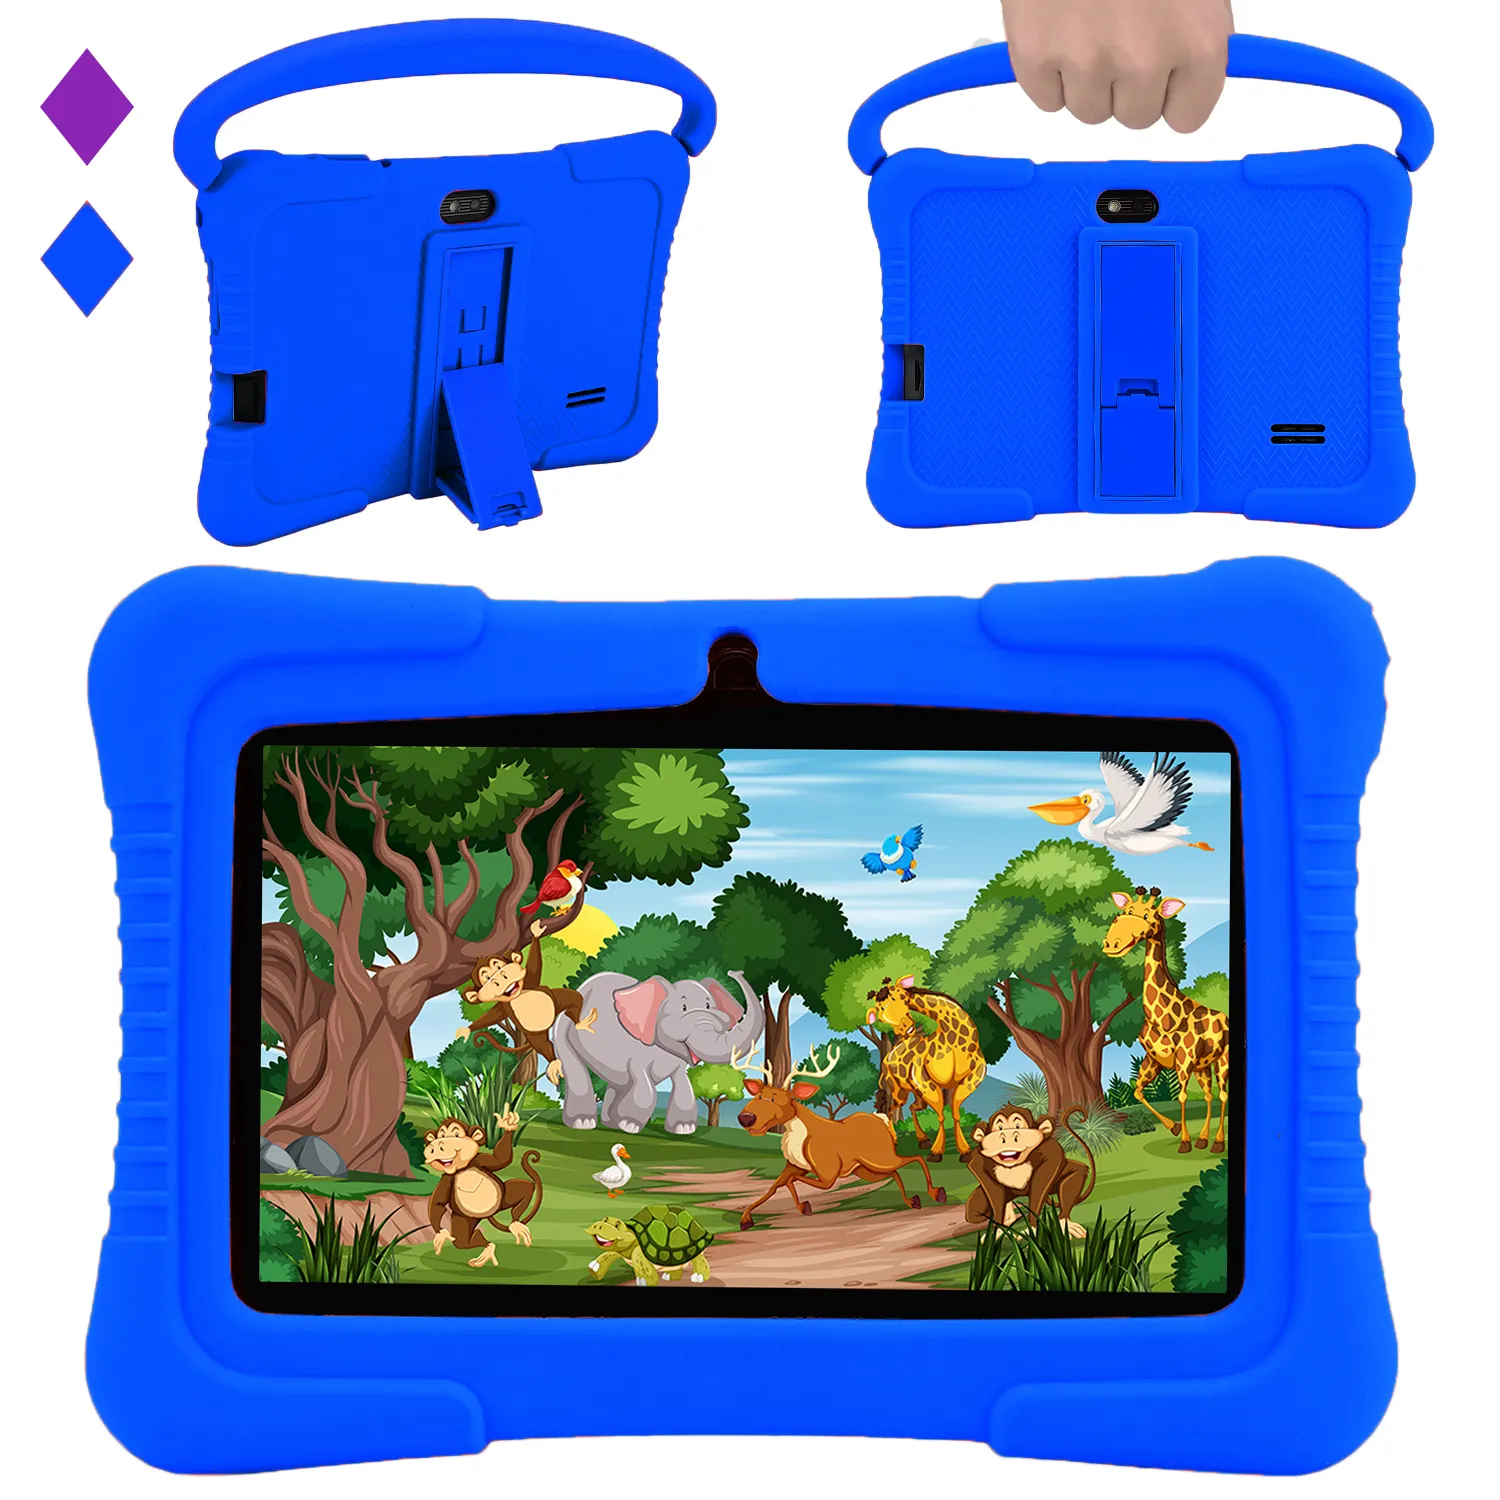 Veidoo Kids Tablet Pc 7 Inch Android Tablet Voor Kinderen 2Gb Ram 32Gb Opslag Peuter Tablet Met Ips Scherm Oudercontrole